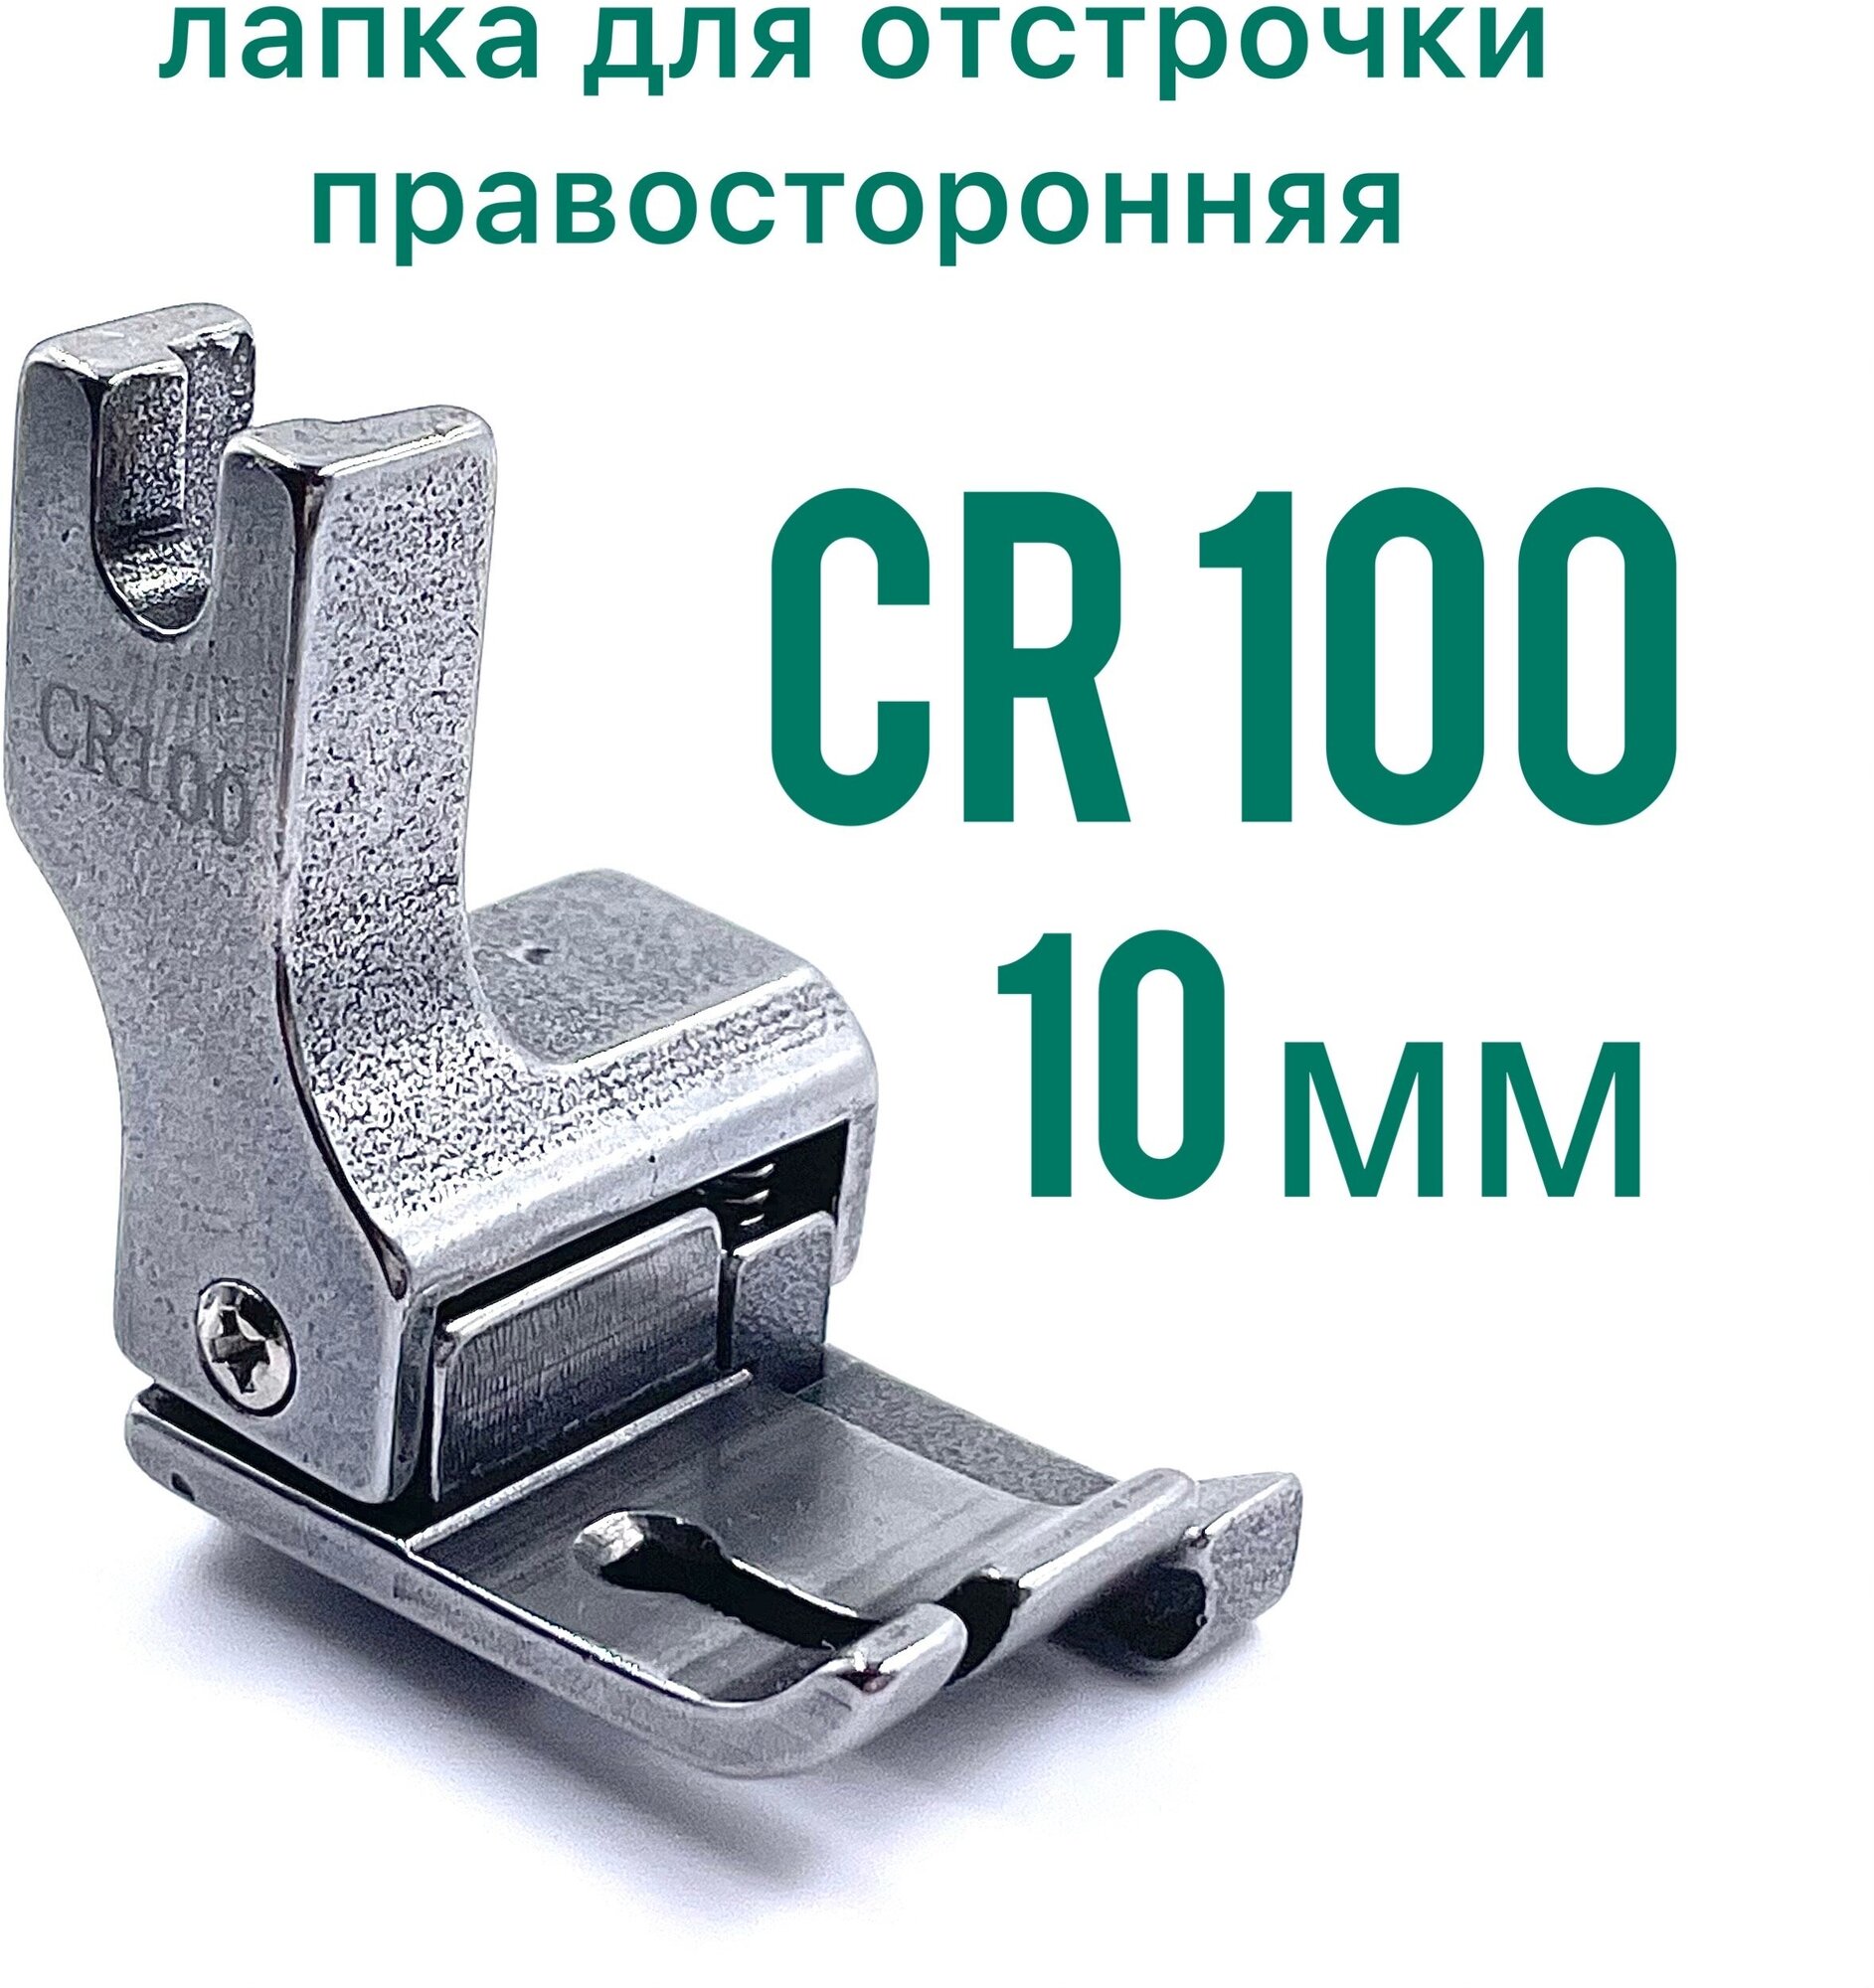 Лапка правосторонняя для отстрочки CR 100 (10 мм) для универсальной промышленной швейной машины